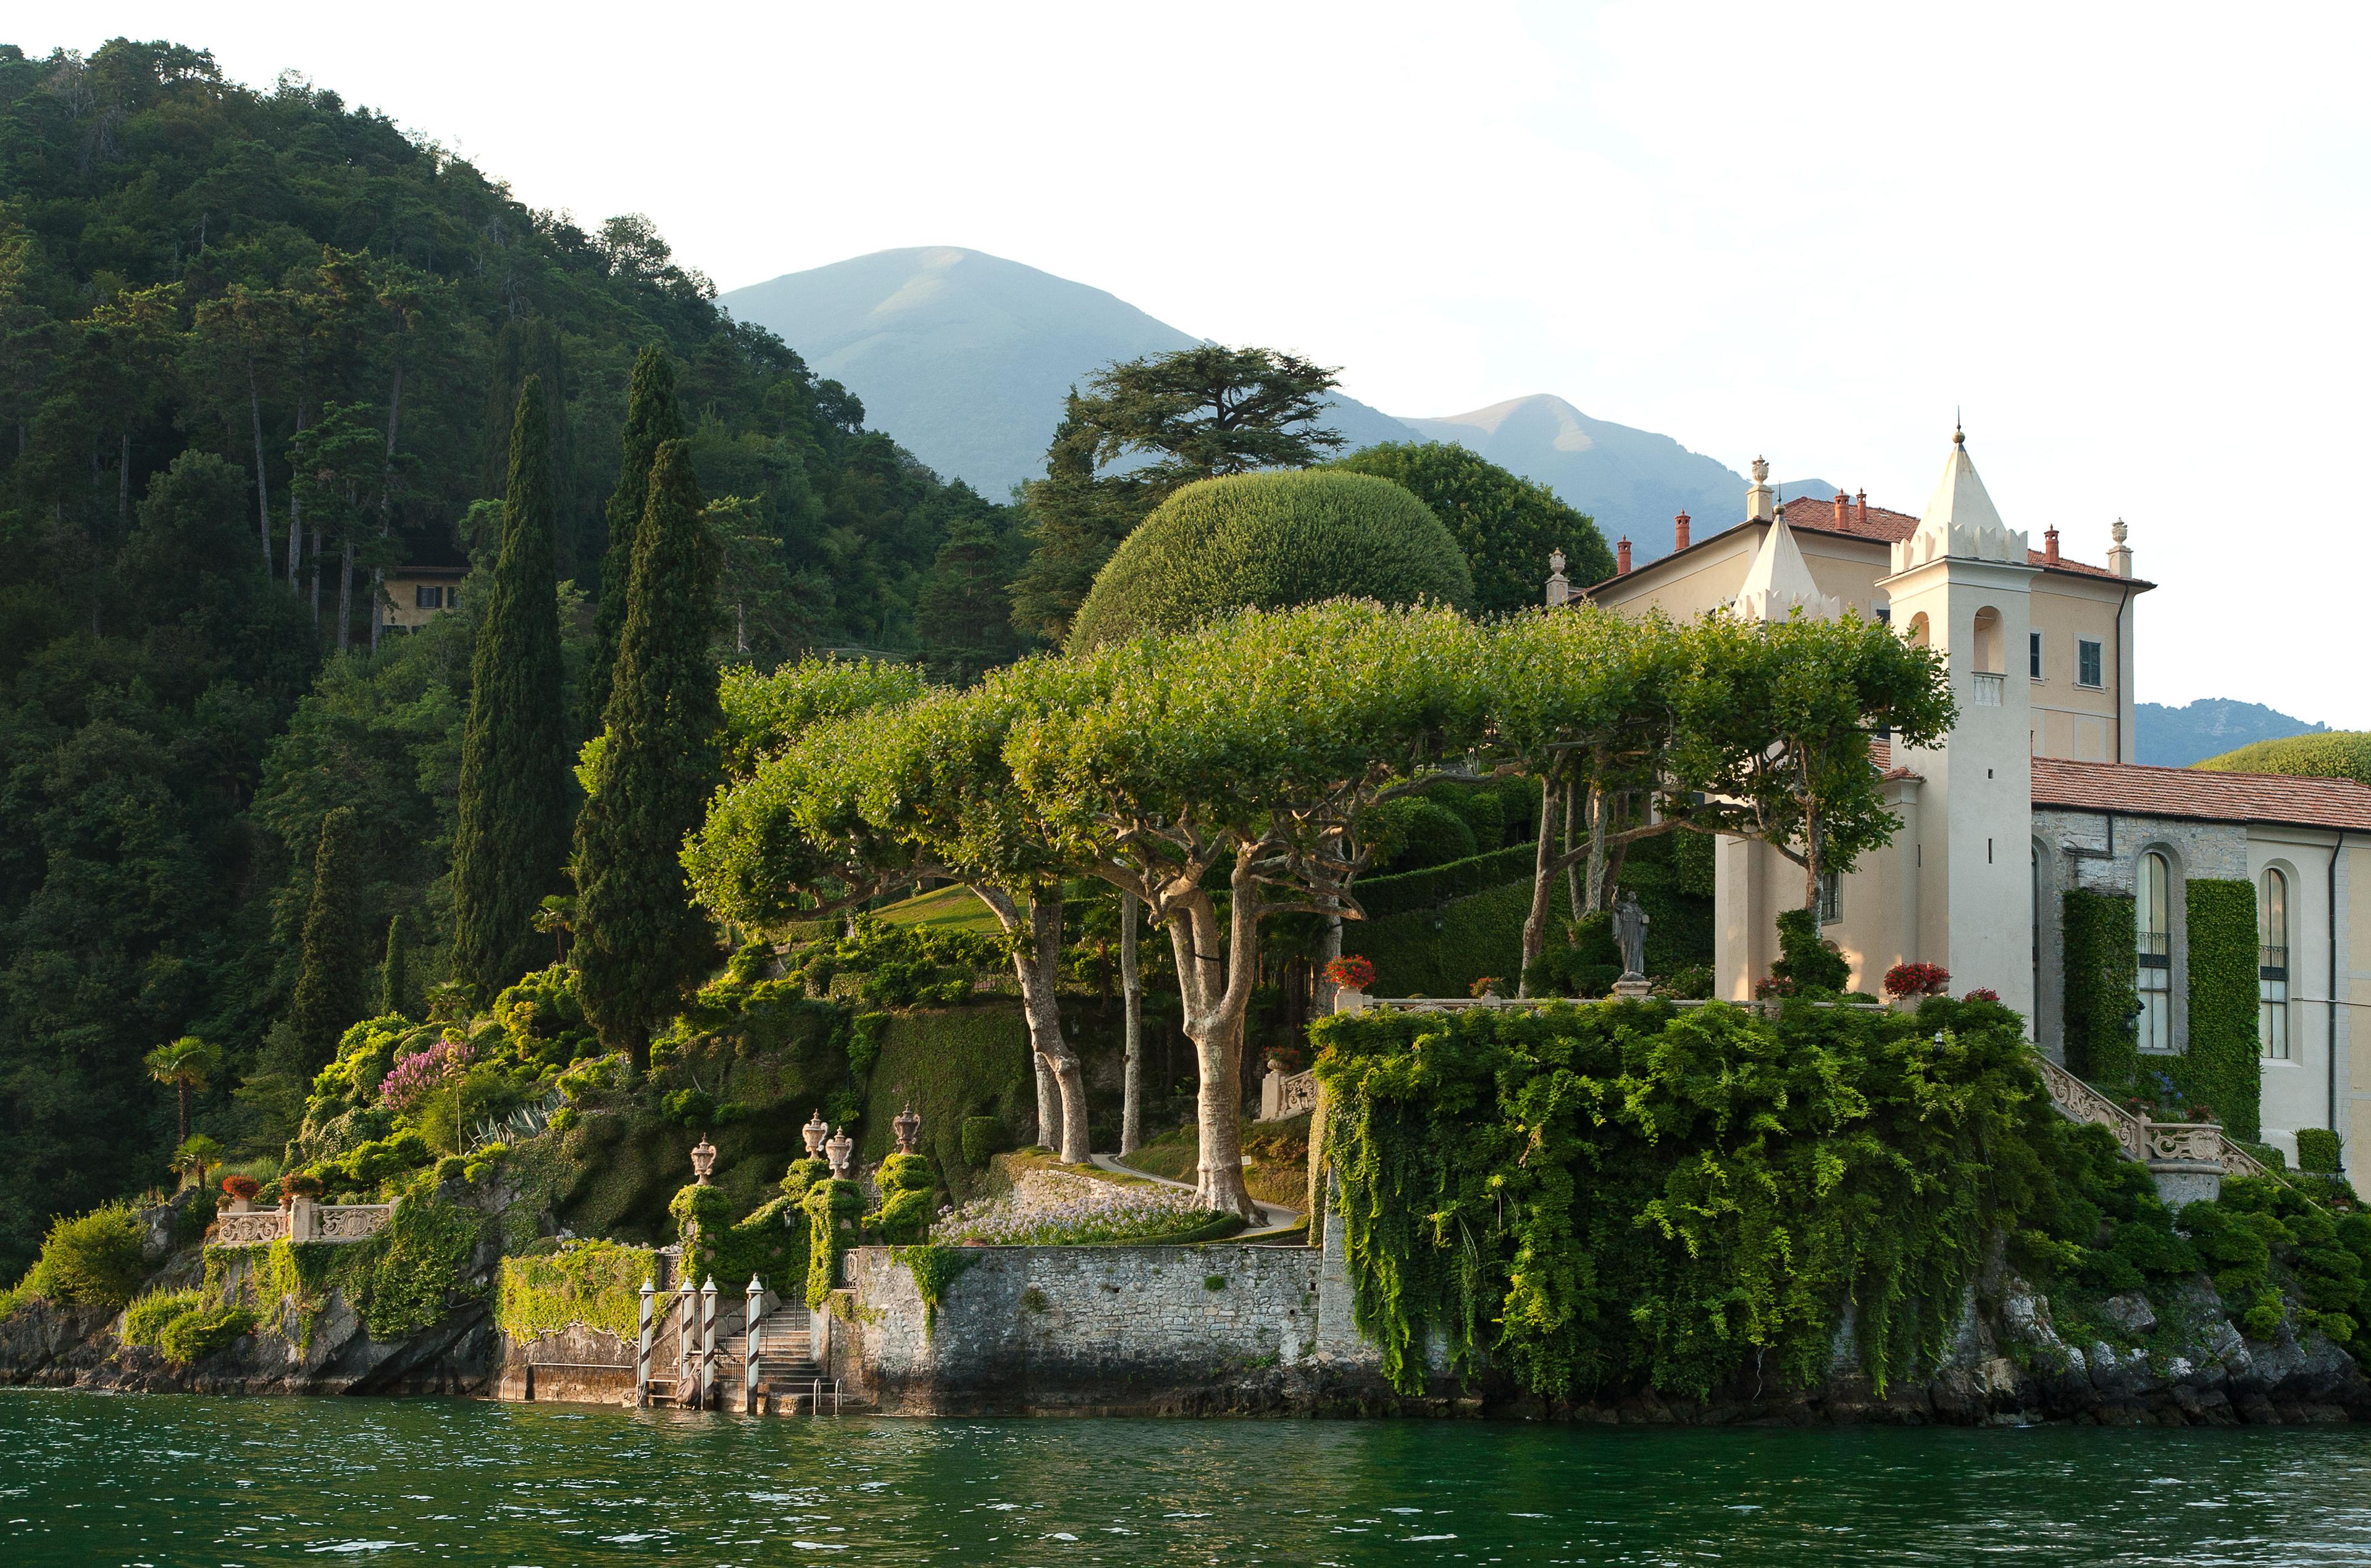 Cover image of this place Villa del Balbianello